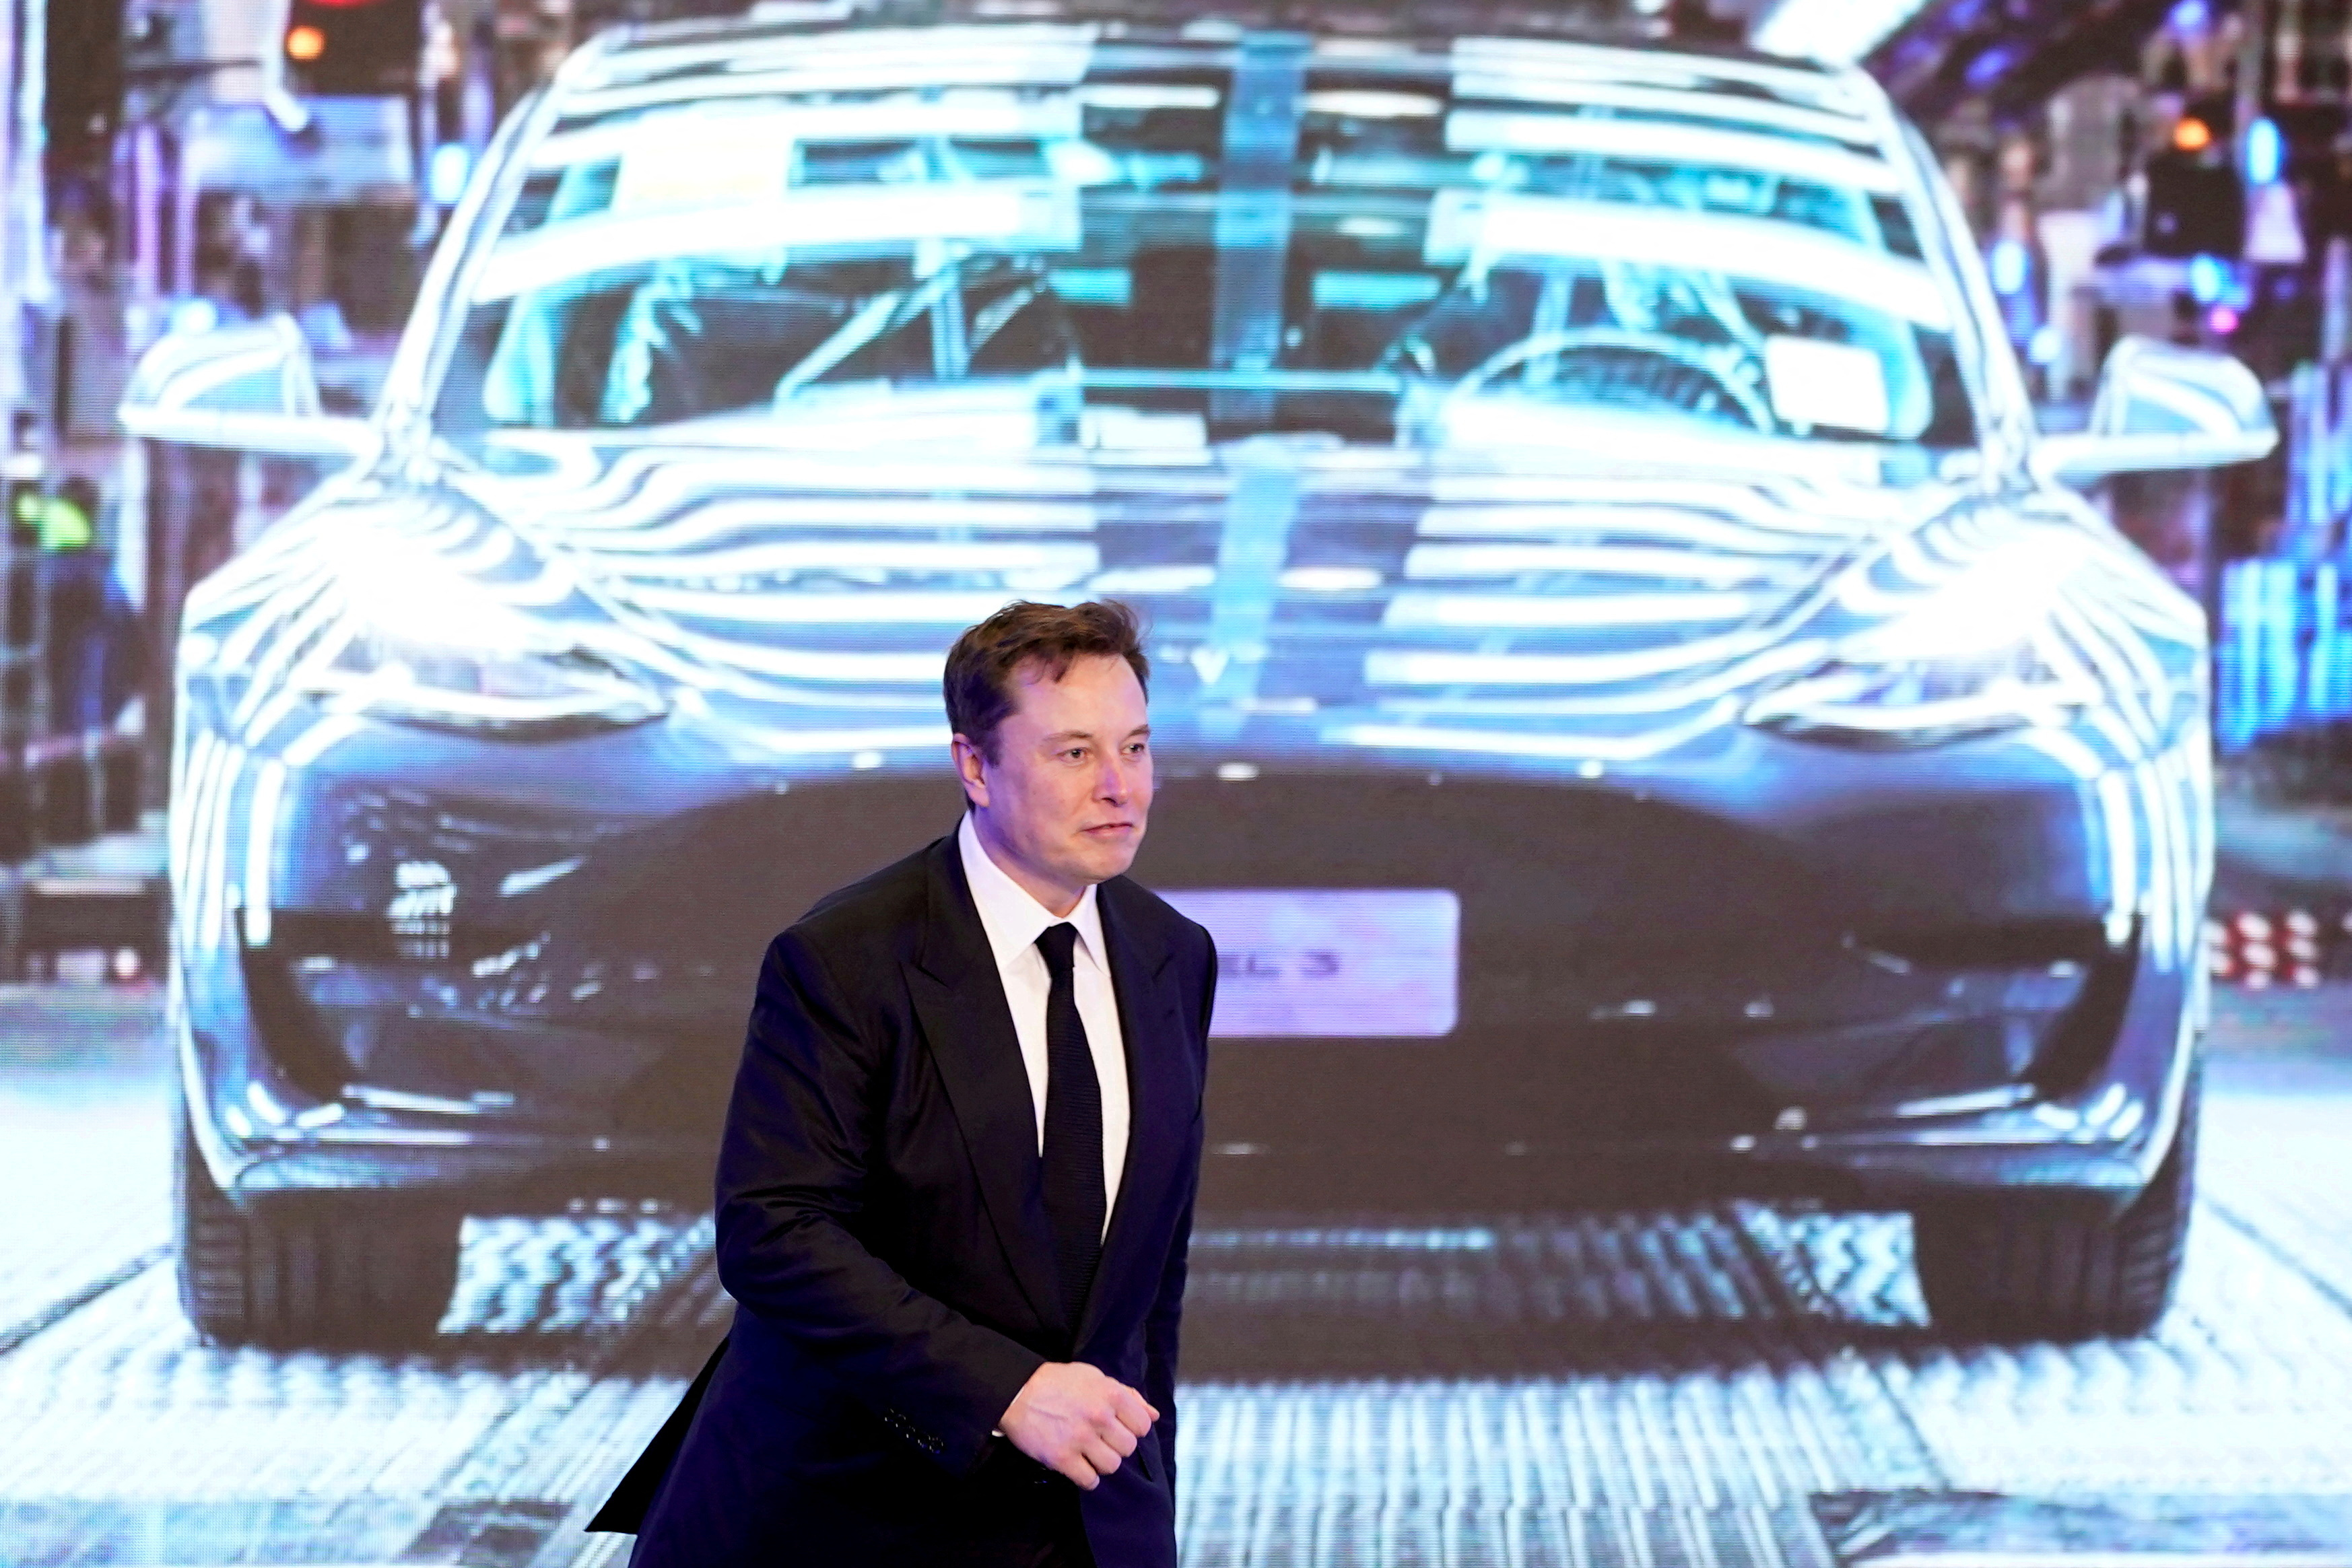 FOTO DE ARCHIVO: El CEO de Tesla Inc, Elon Musk, camina junto a una pantalla que muestra una imagen del automóvil Tesla Model 3 durante una ceremonia de apertura del programa Tesla Model Y fabricado en China en Shanghái, China, el 7 de enero de 2020. REUTERS/Aly Song/Foto de archivo